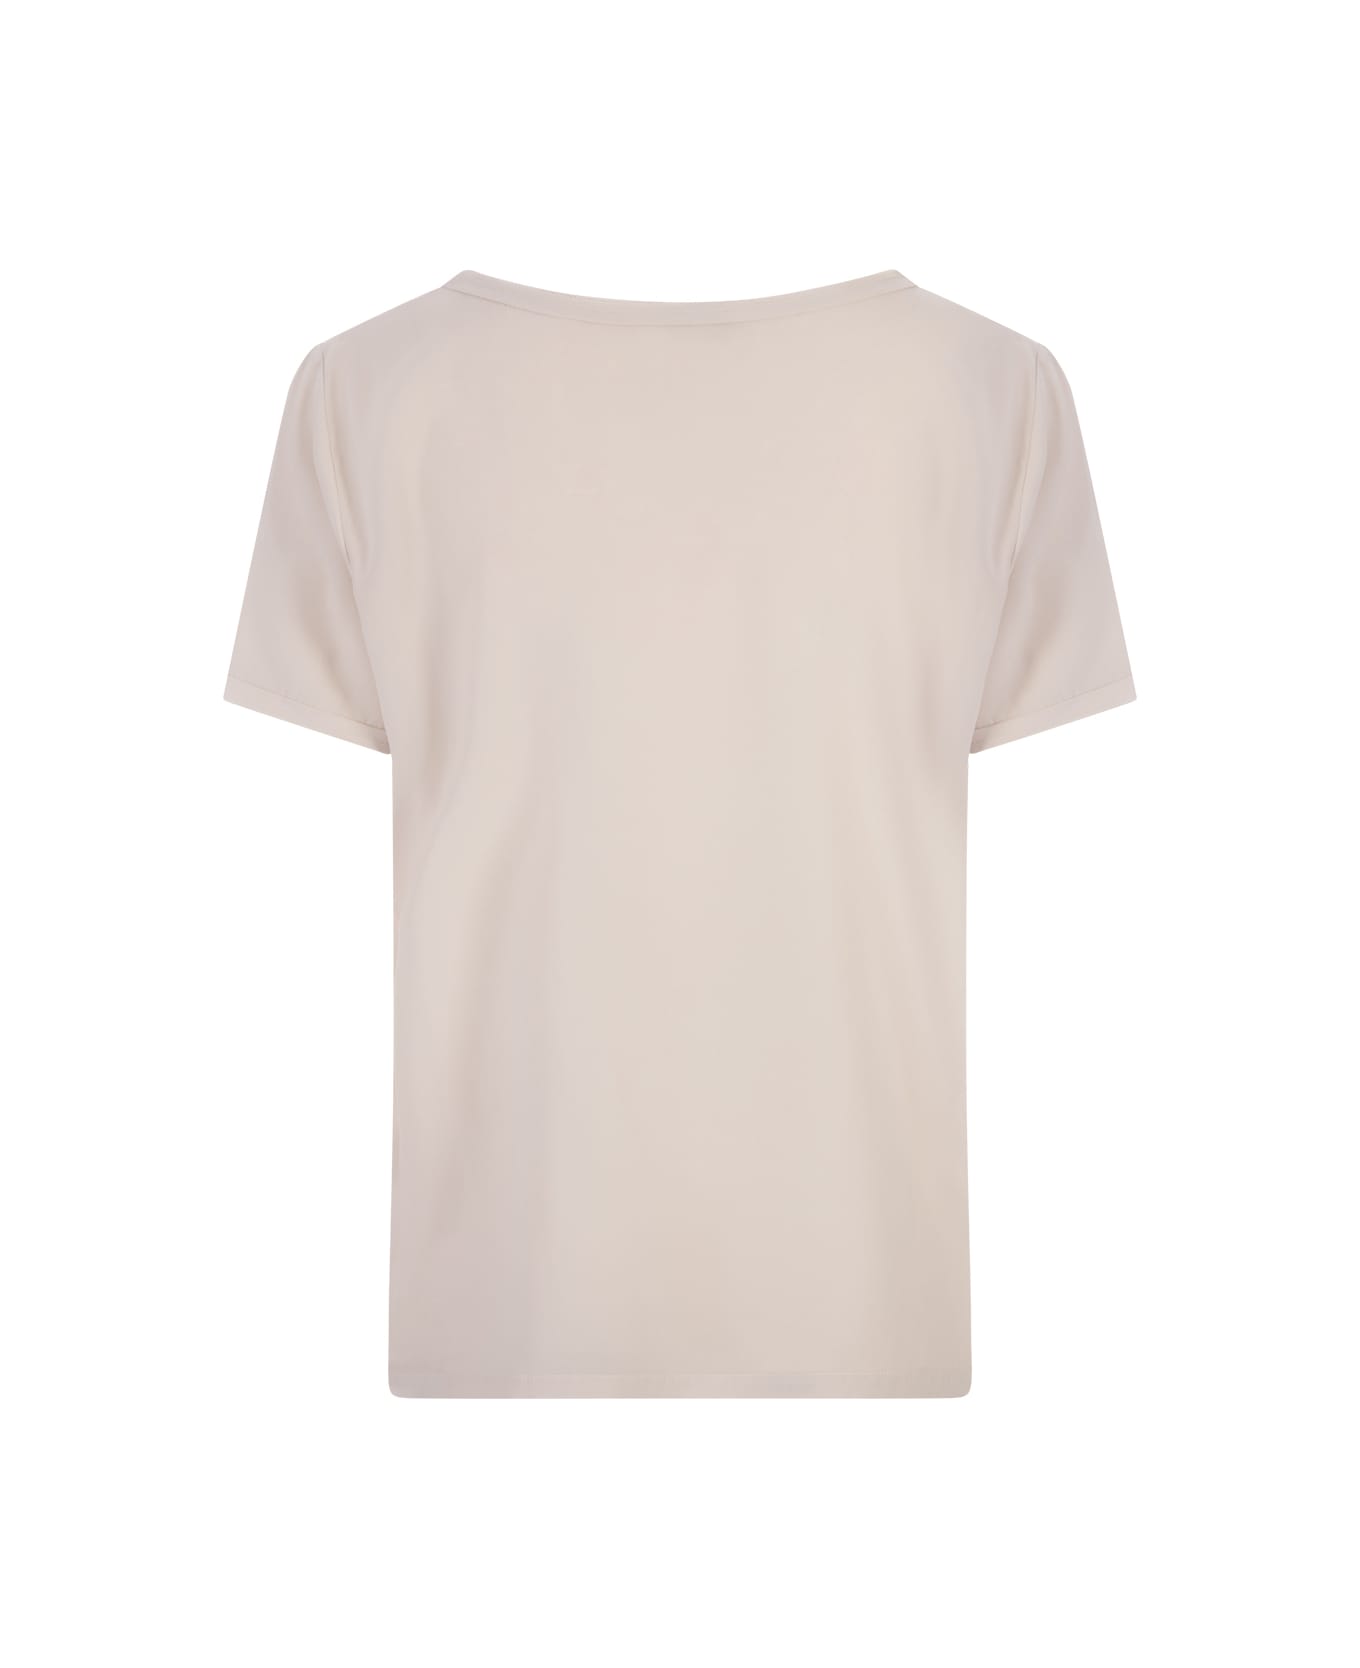 Her Shirt Ecru Opaque Silk T-shirt - Brown